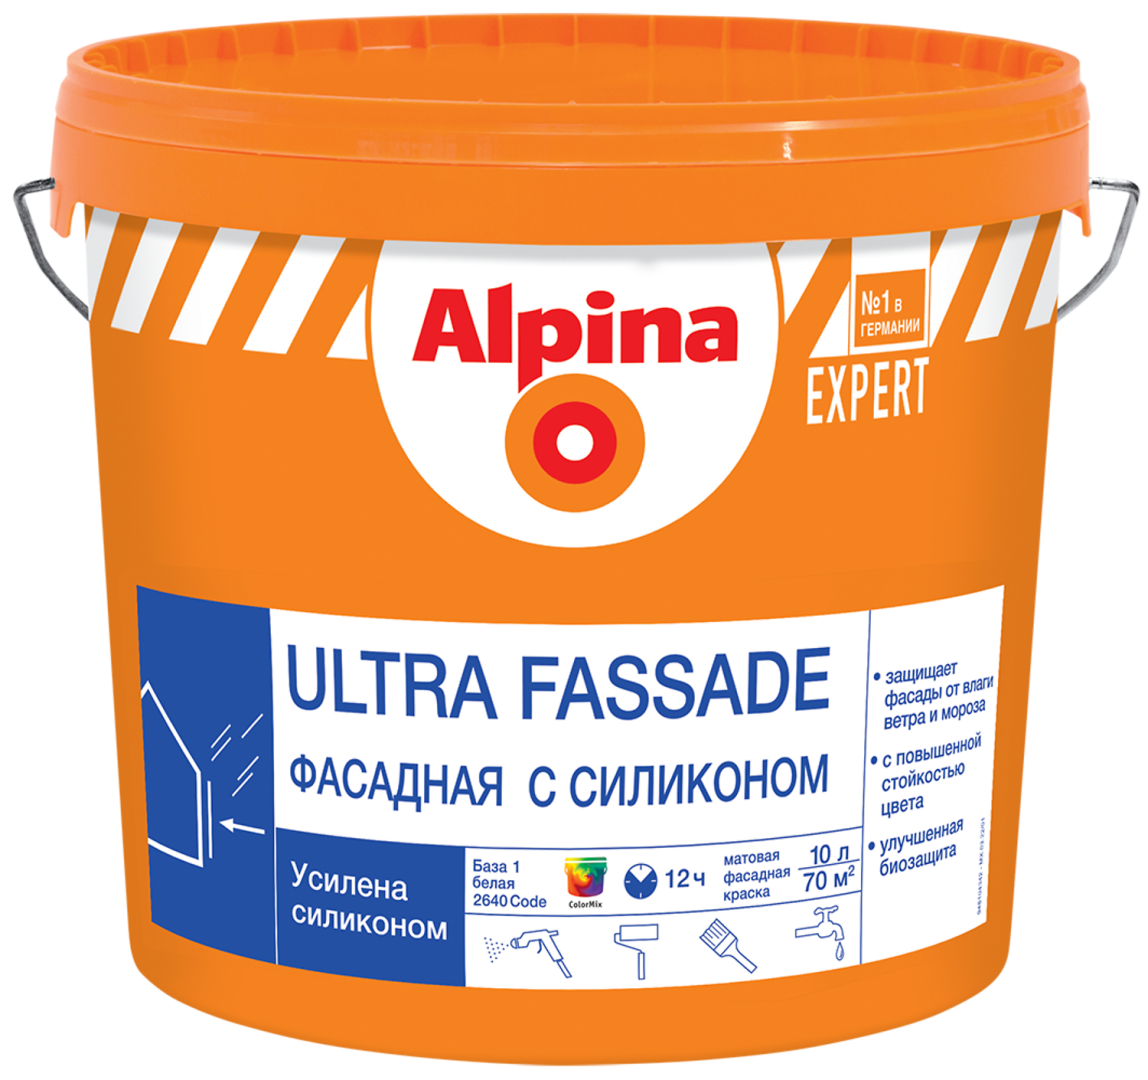 ALPINA EXPERT ULTRA FASSADE краска для наружных работ, фасадная с силиконом, База 1 (9л)